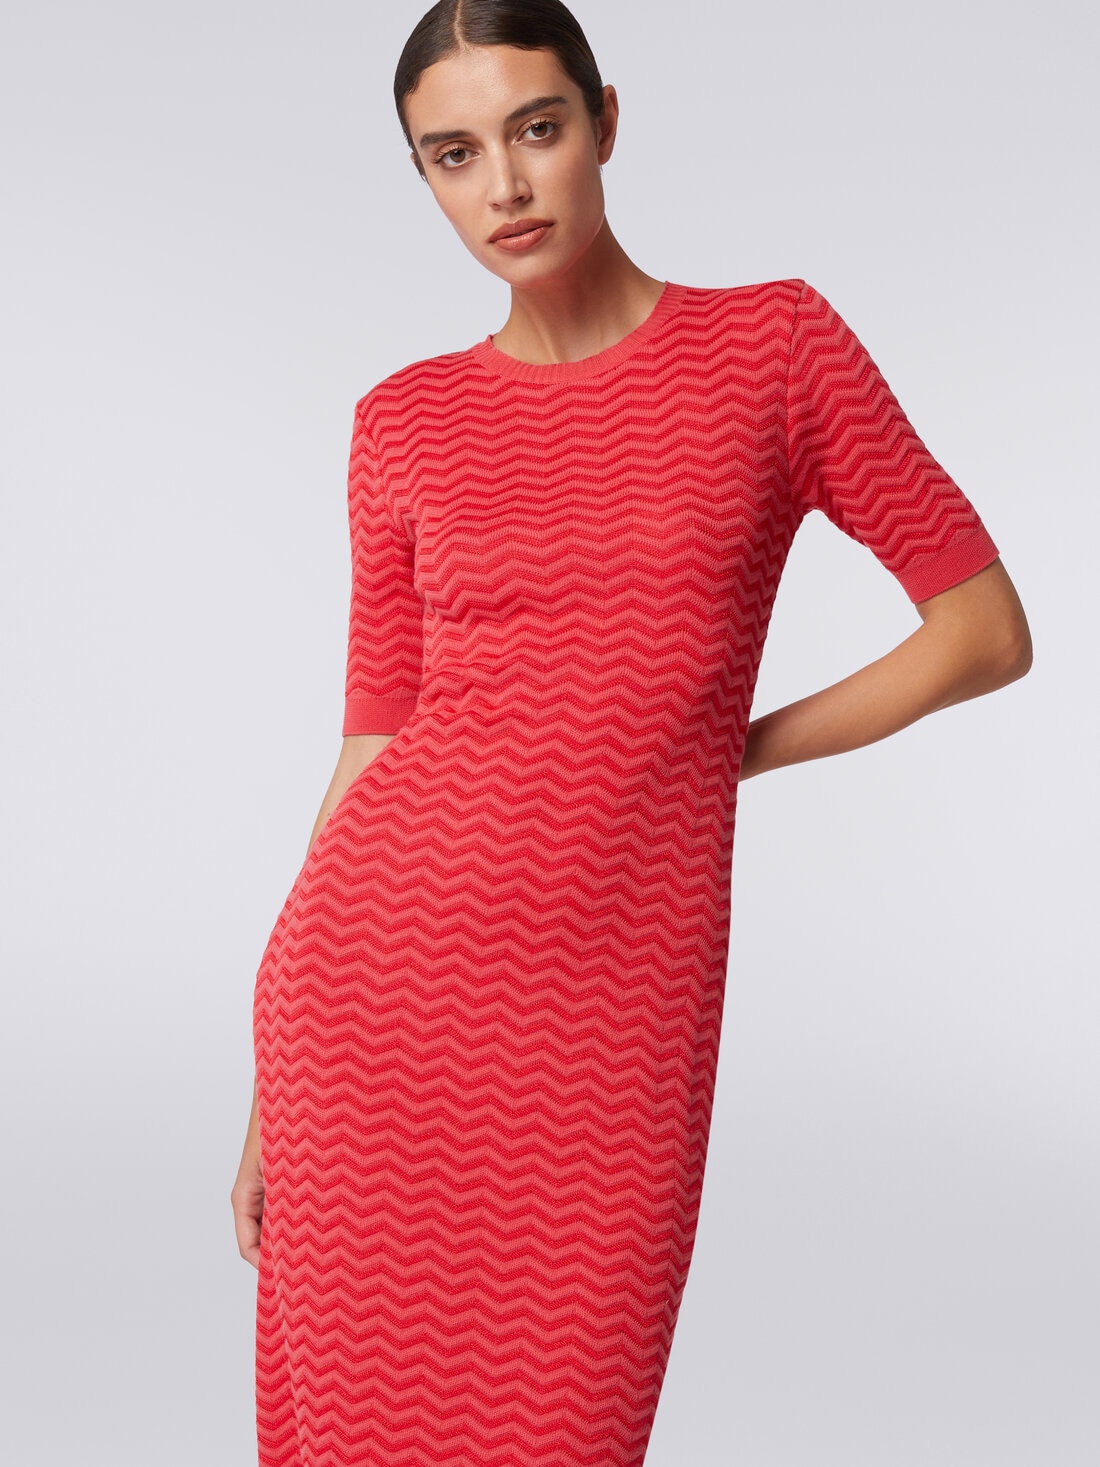 Longuette-Kleid aus Strick mit Chevronmuster und rundem Halsausschnitt, Rot  - DS24SG2DBK033W81756 - 4